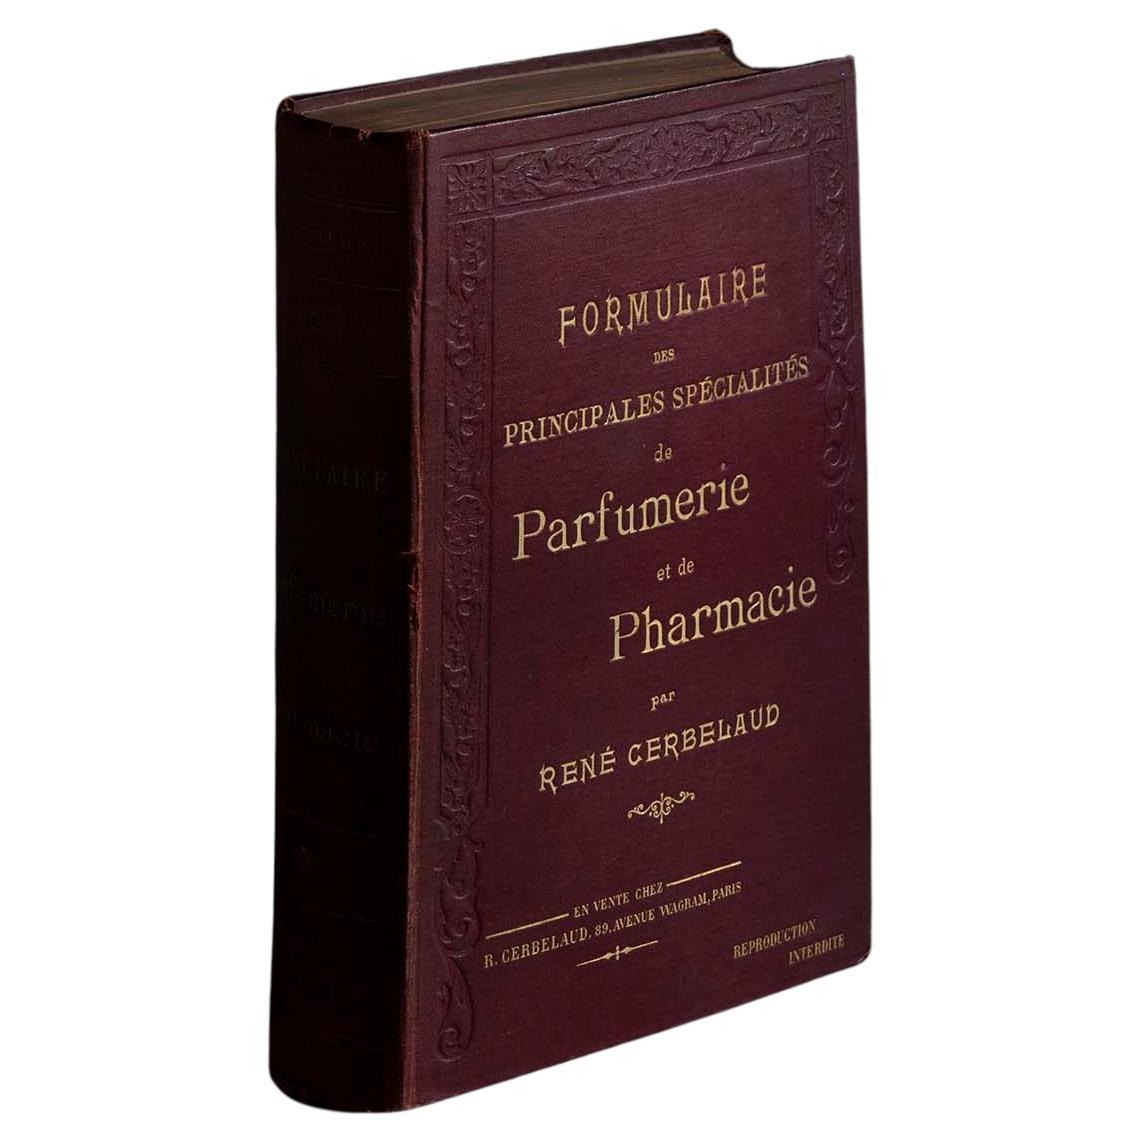 Le livre de parfumerie et de pharmacie de René Cerbelaud en vente